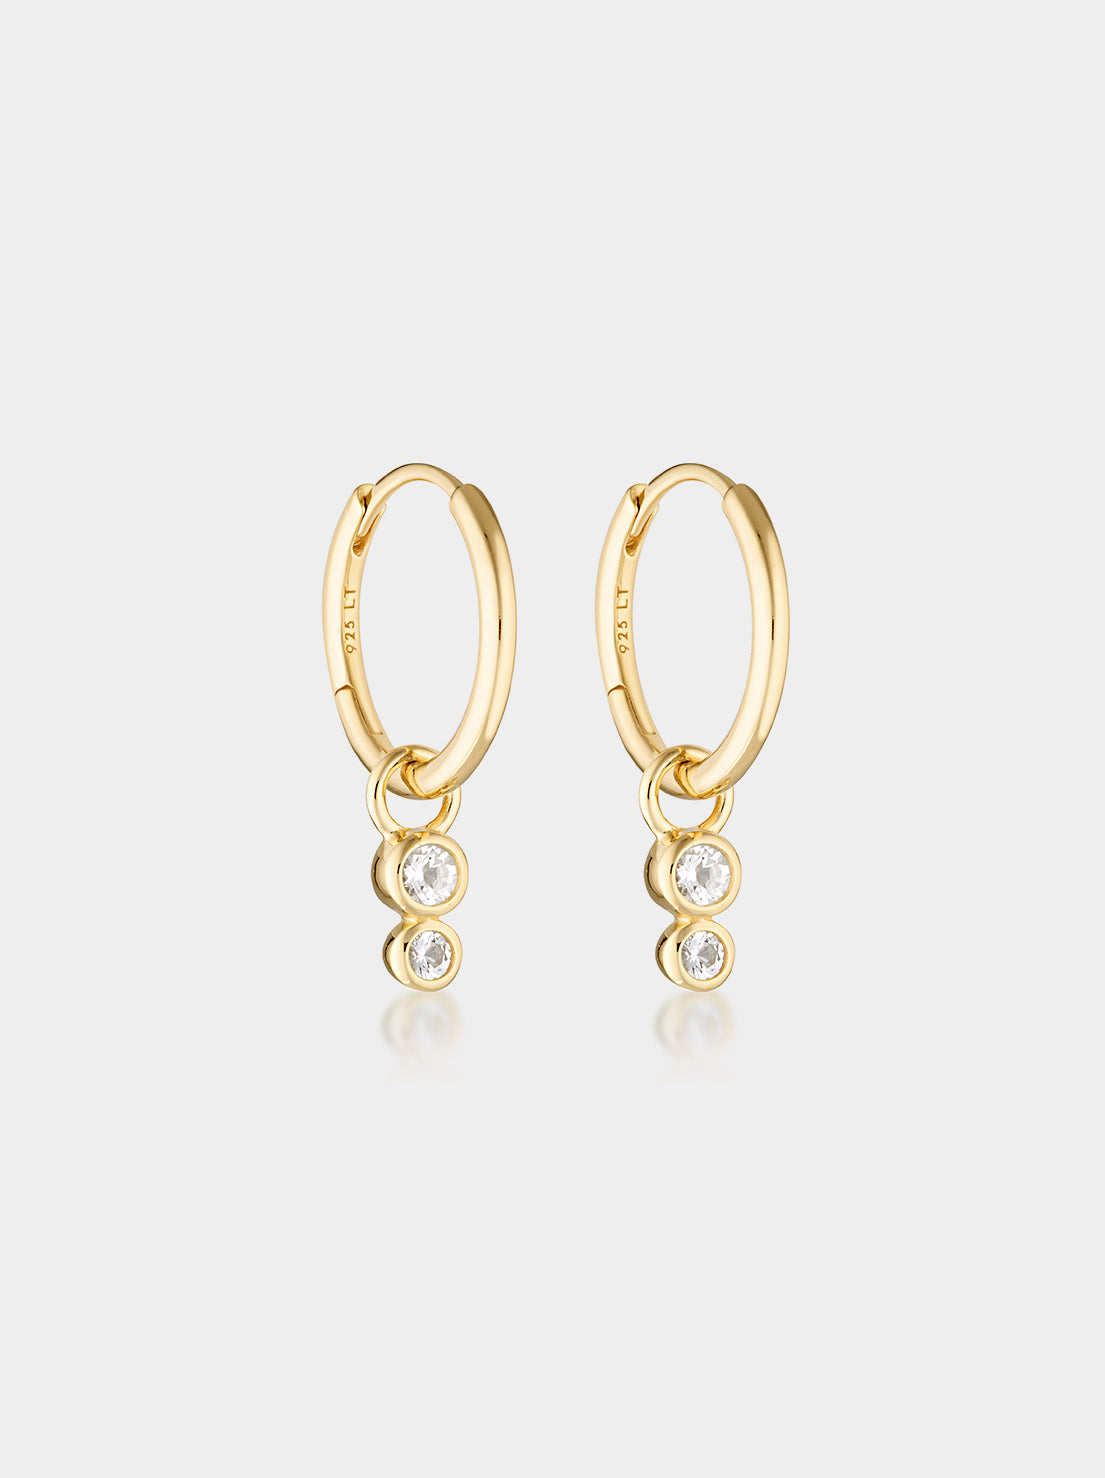 Linda Tahija - Duo Huggie Hoop Earrings - Gold Plated - White Topaz